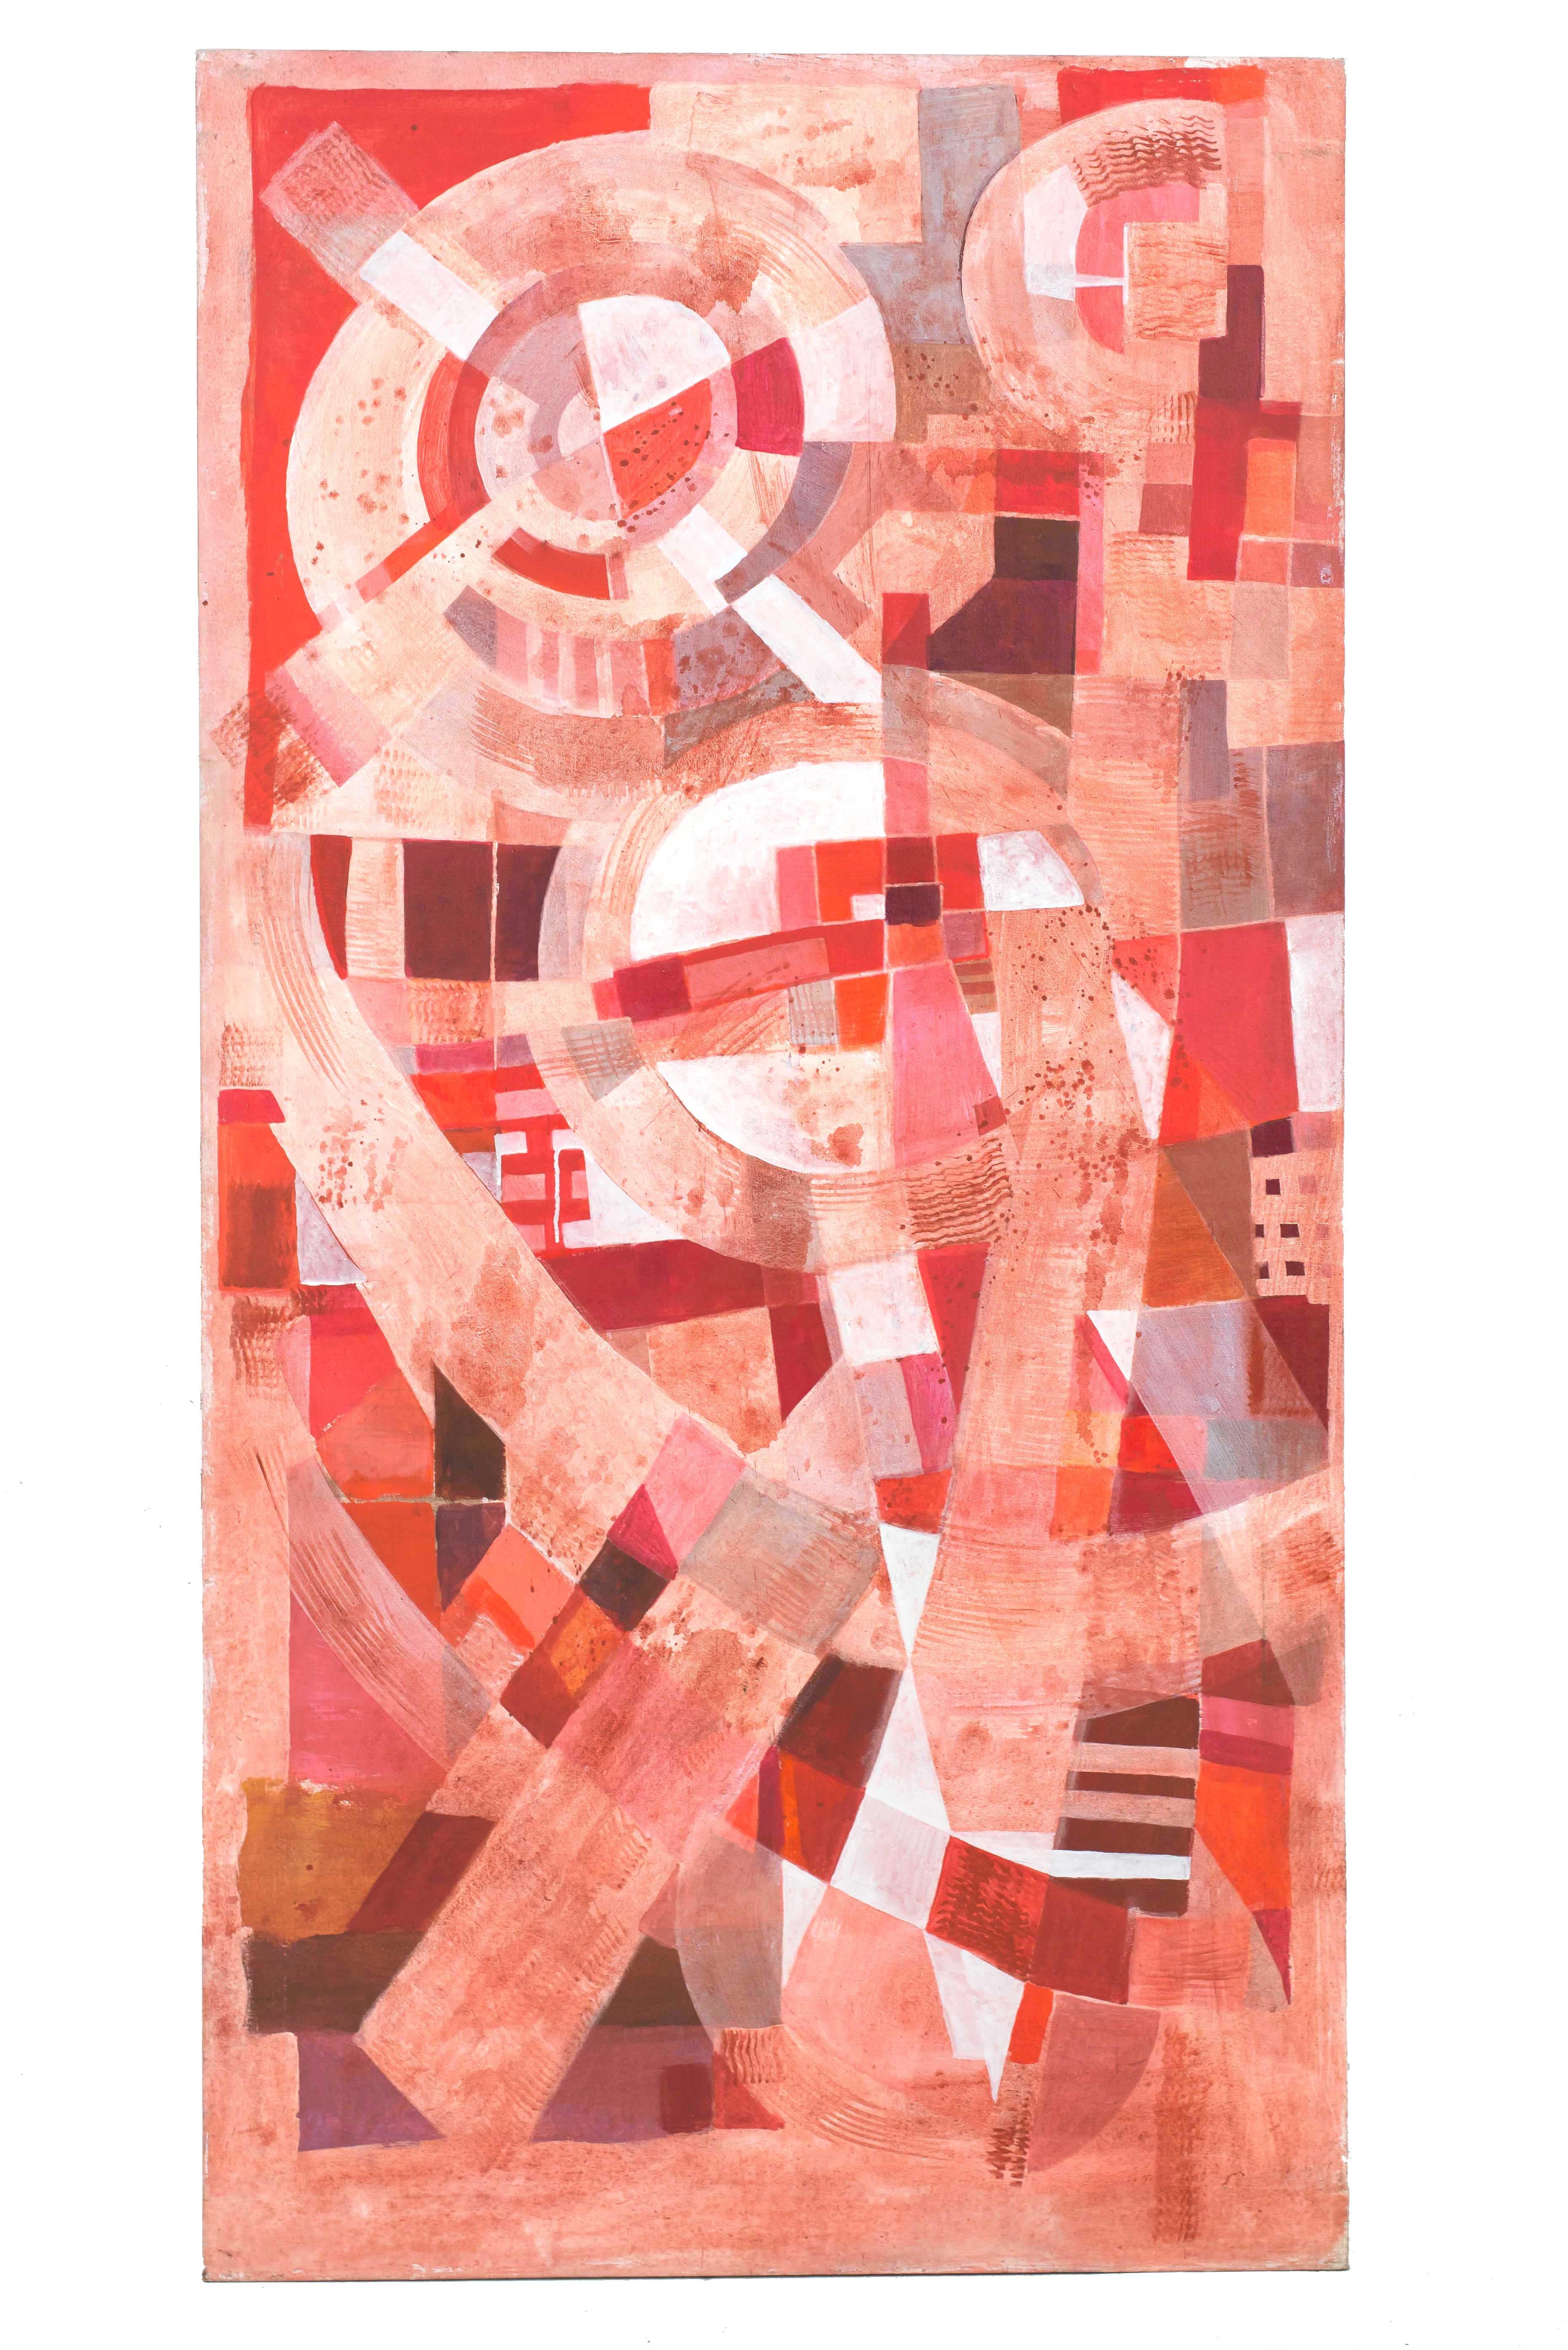 Ensemble de 3 tableaux abstraits contemporains (triptyque) à la gouache sur toile rectangulaire dans les tons de rose, rouge et blanc. (TOM JOHN, 2010).
     